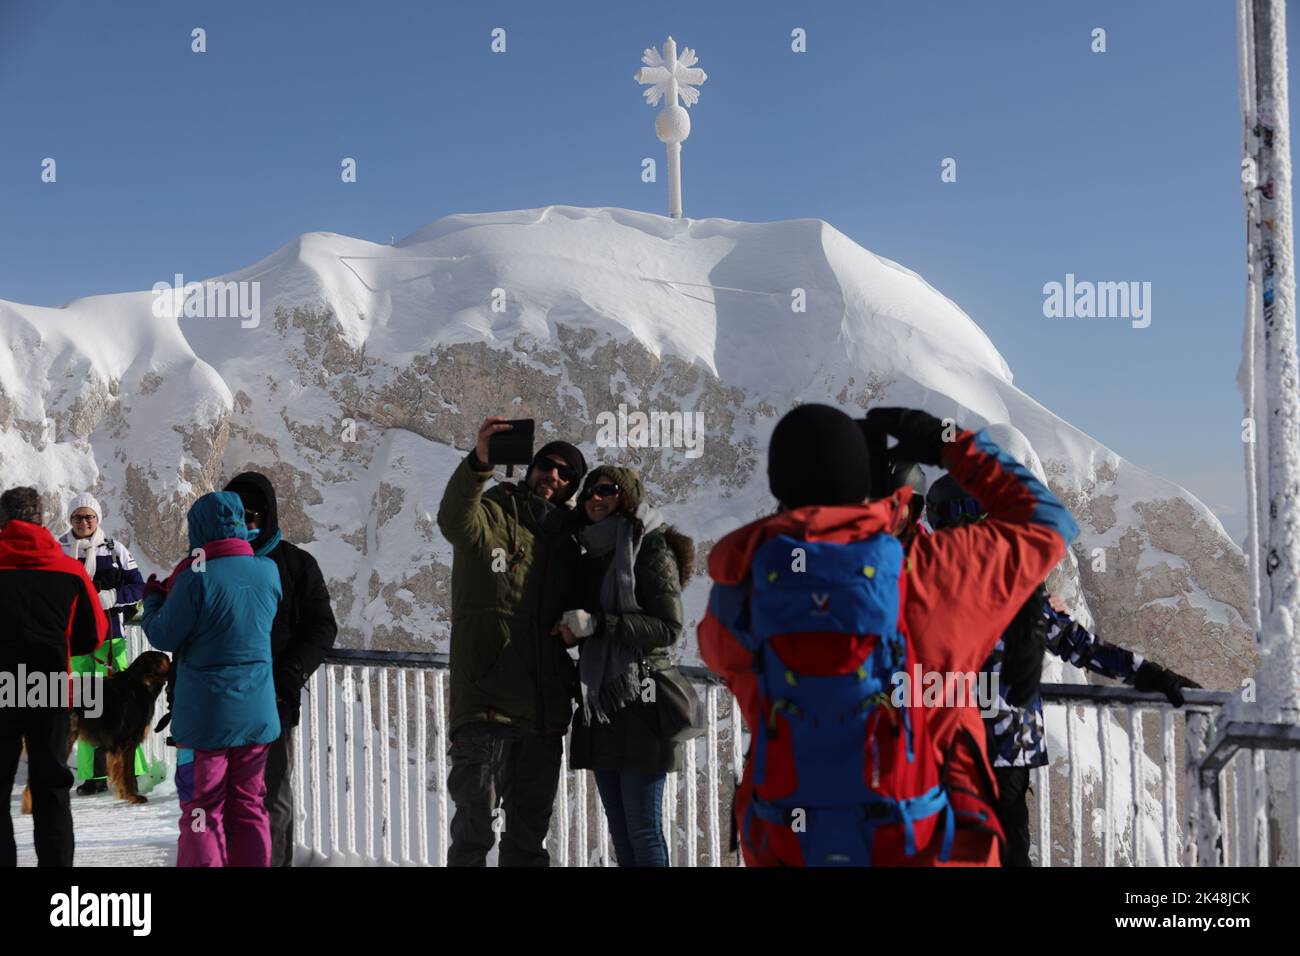 Besucher auf der Zugspitze fotografieren das Gipfelkreuz und machen selfies. Es herrscht bittere Kälte, und alle Touristen sind warm angezogen. Das Gipfelkreuz ist mit Raureif überzogen und hebt sich hell gegen den wolkenlosen, blauen Himmel ab Foto de stock